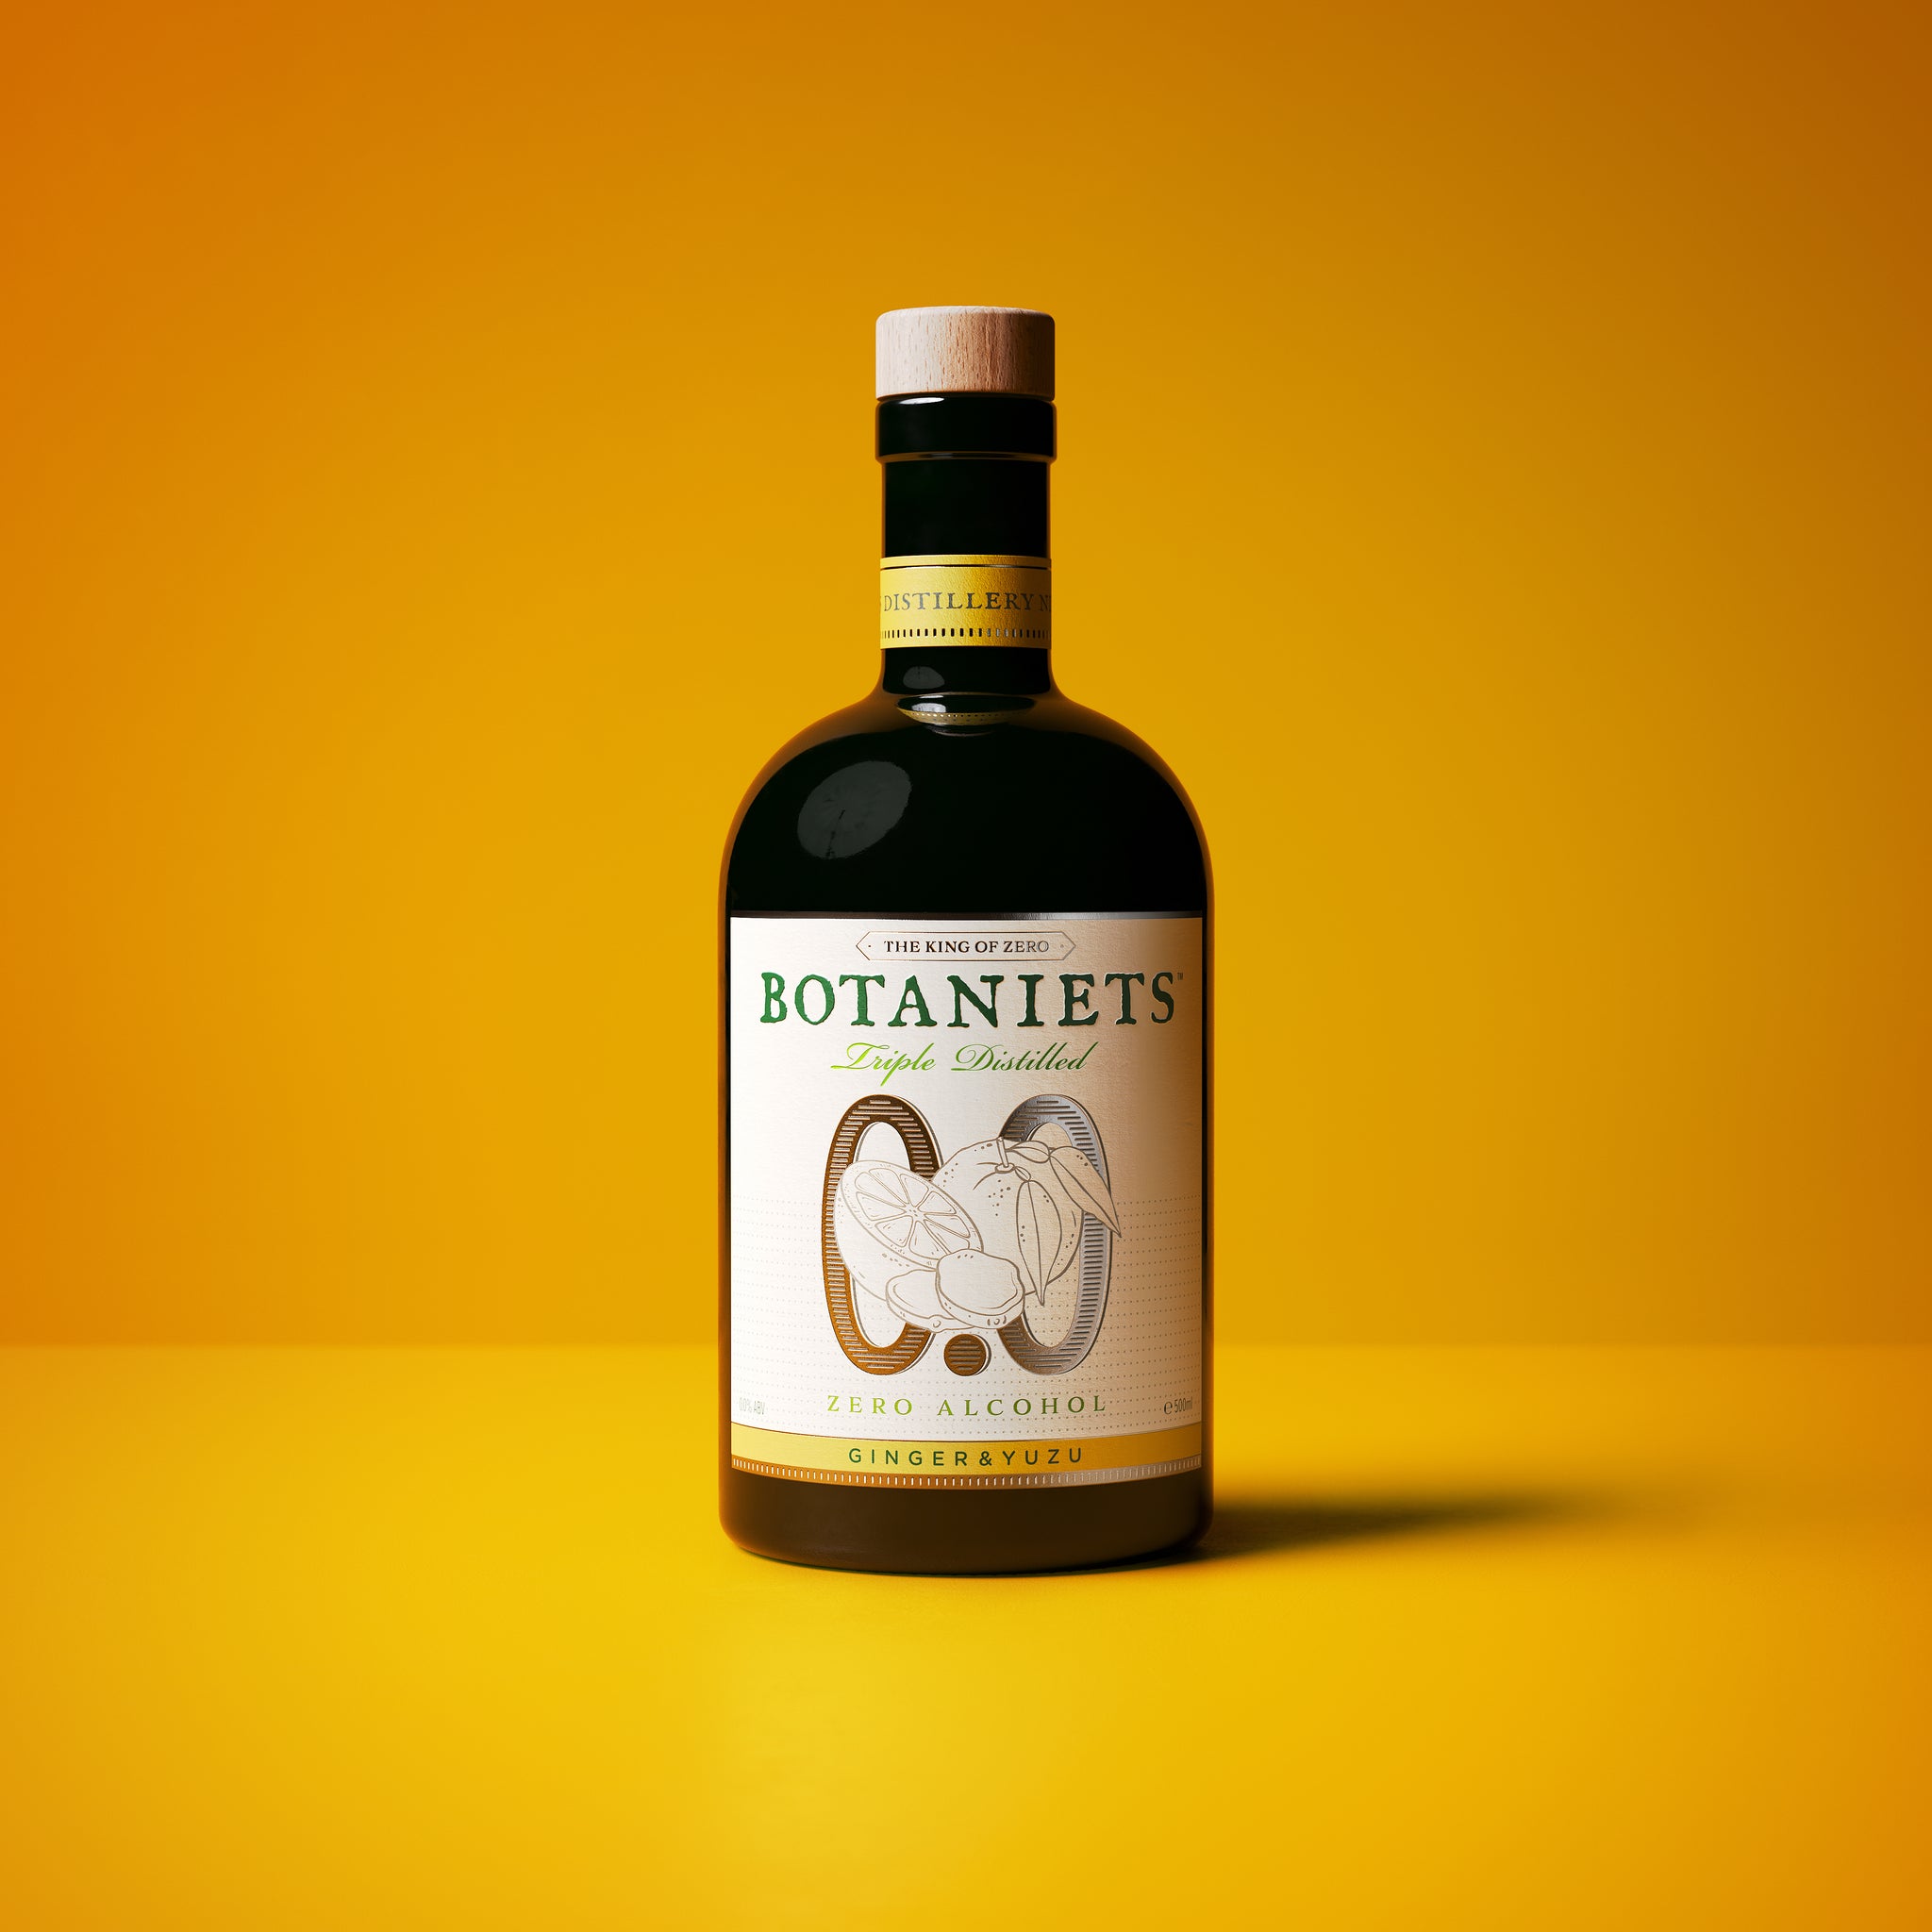 Botaniets Ginger Yuzu, Distilled Spirit 0.0% 50cl